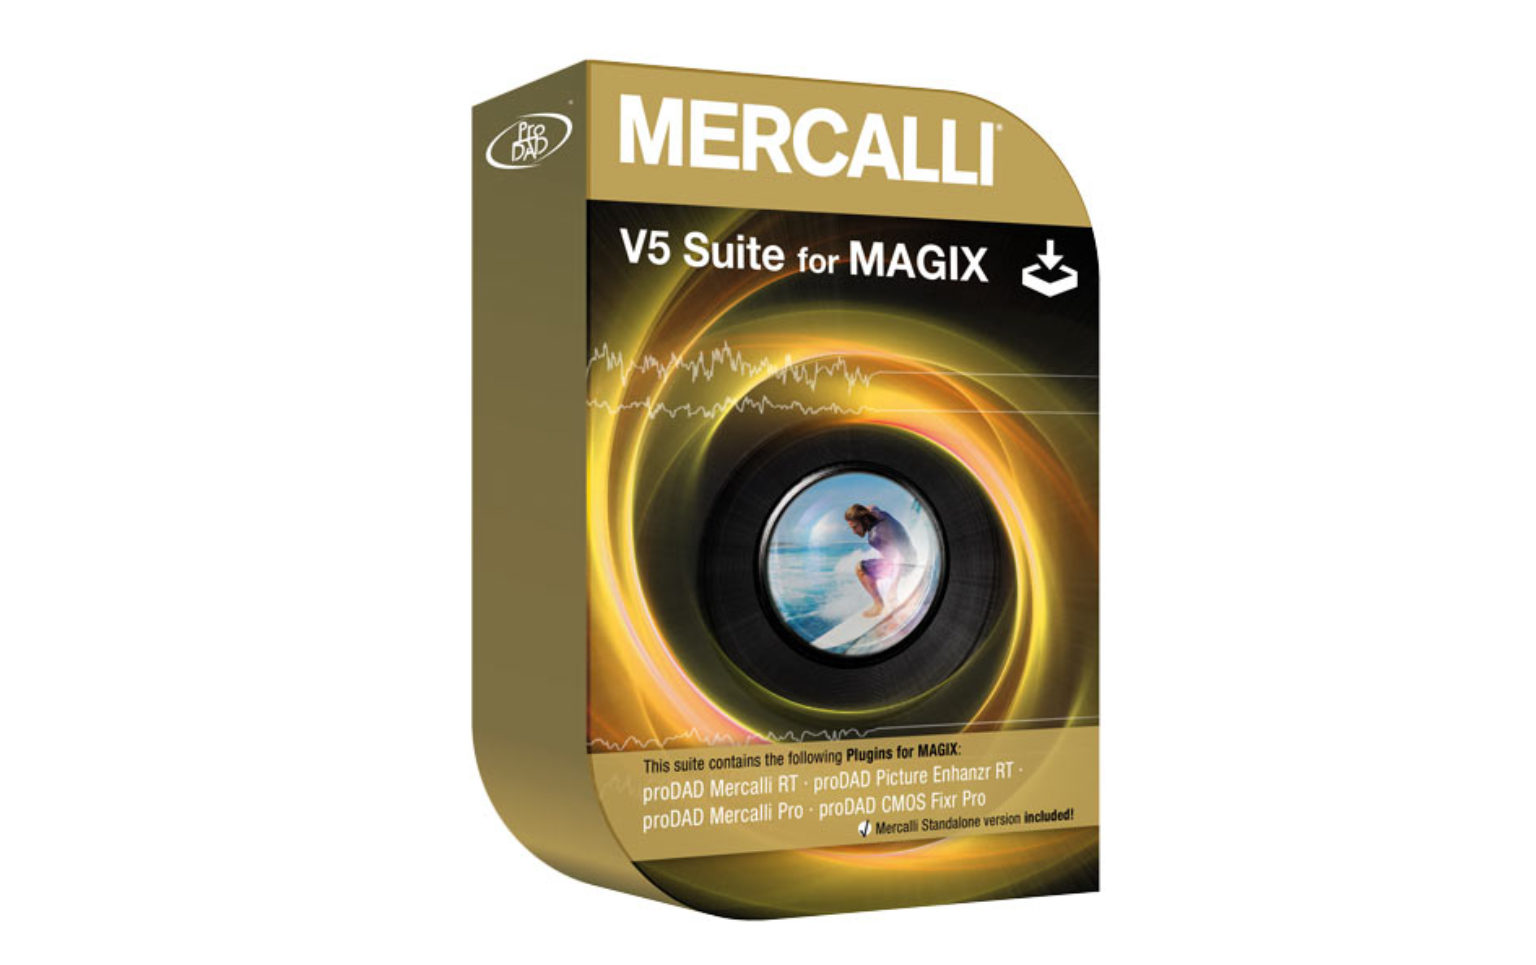 mercalli v5 suite for magix